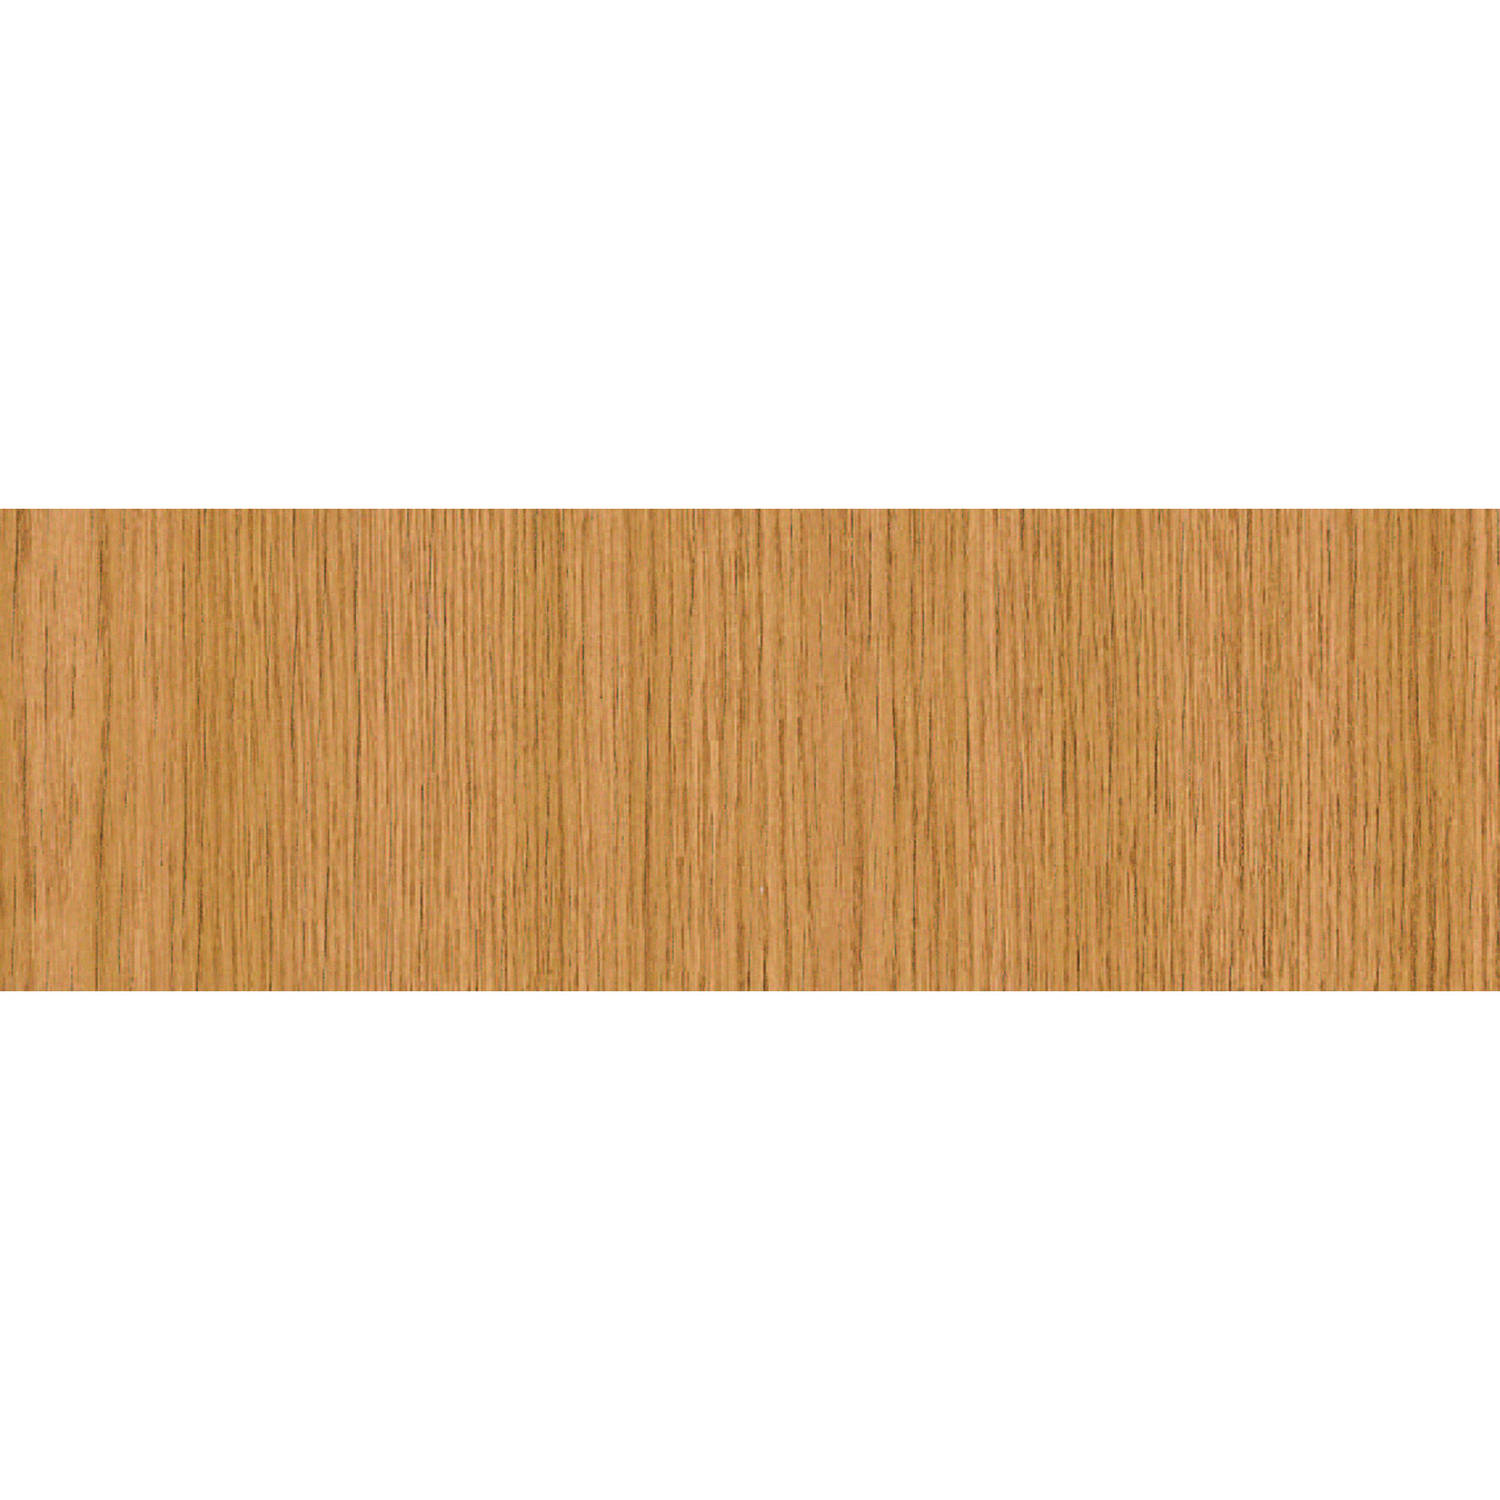 Decoratie plakfolie eiken houtnerf look bruin 45 cm x 2 meter zelfklevend - Decoratiefolie - Meubelfolie